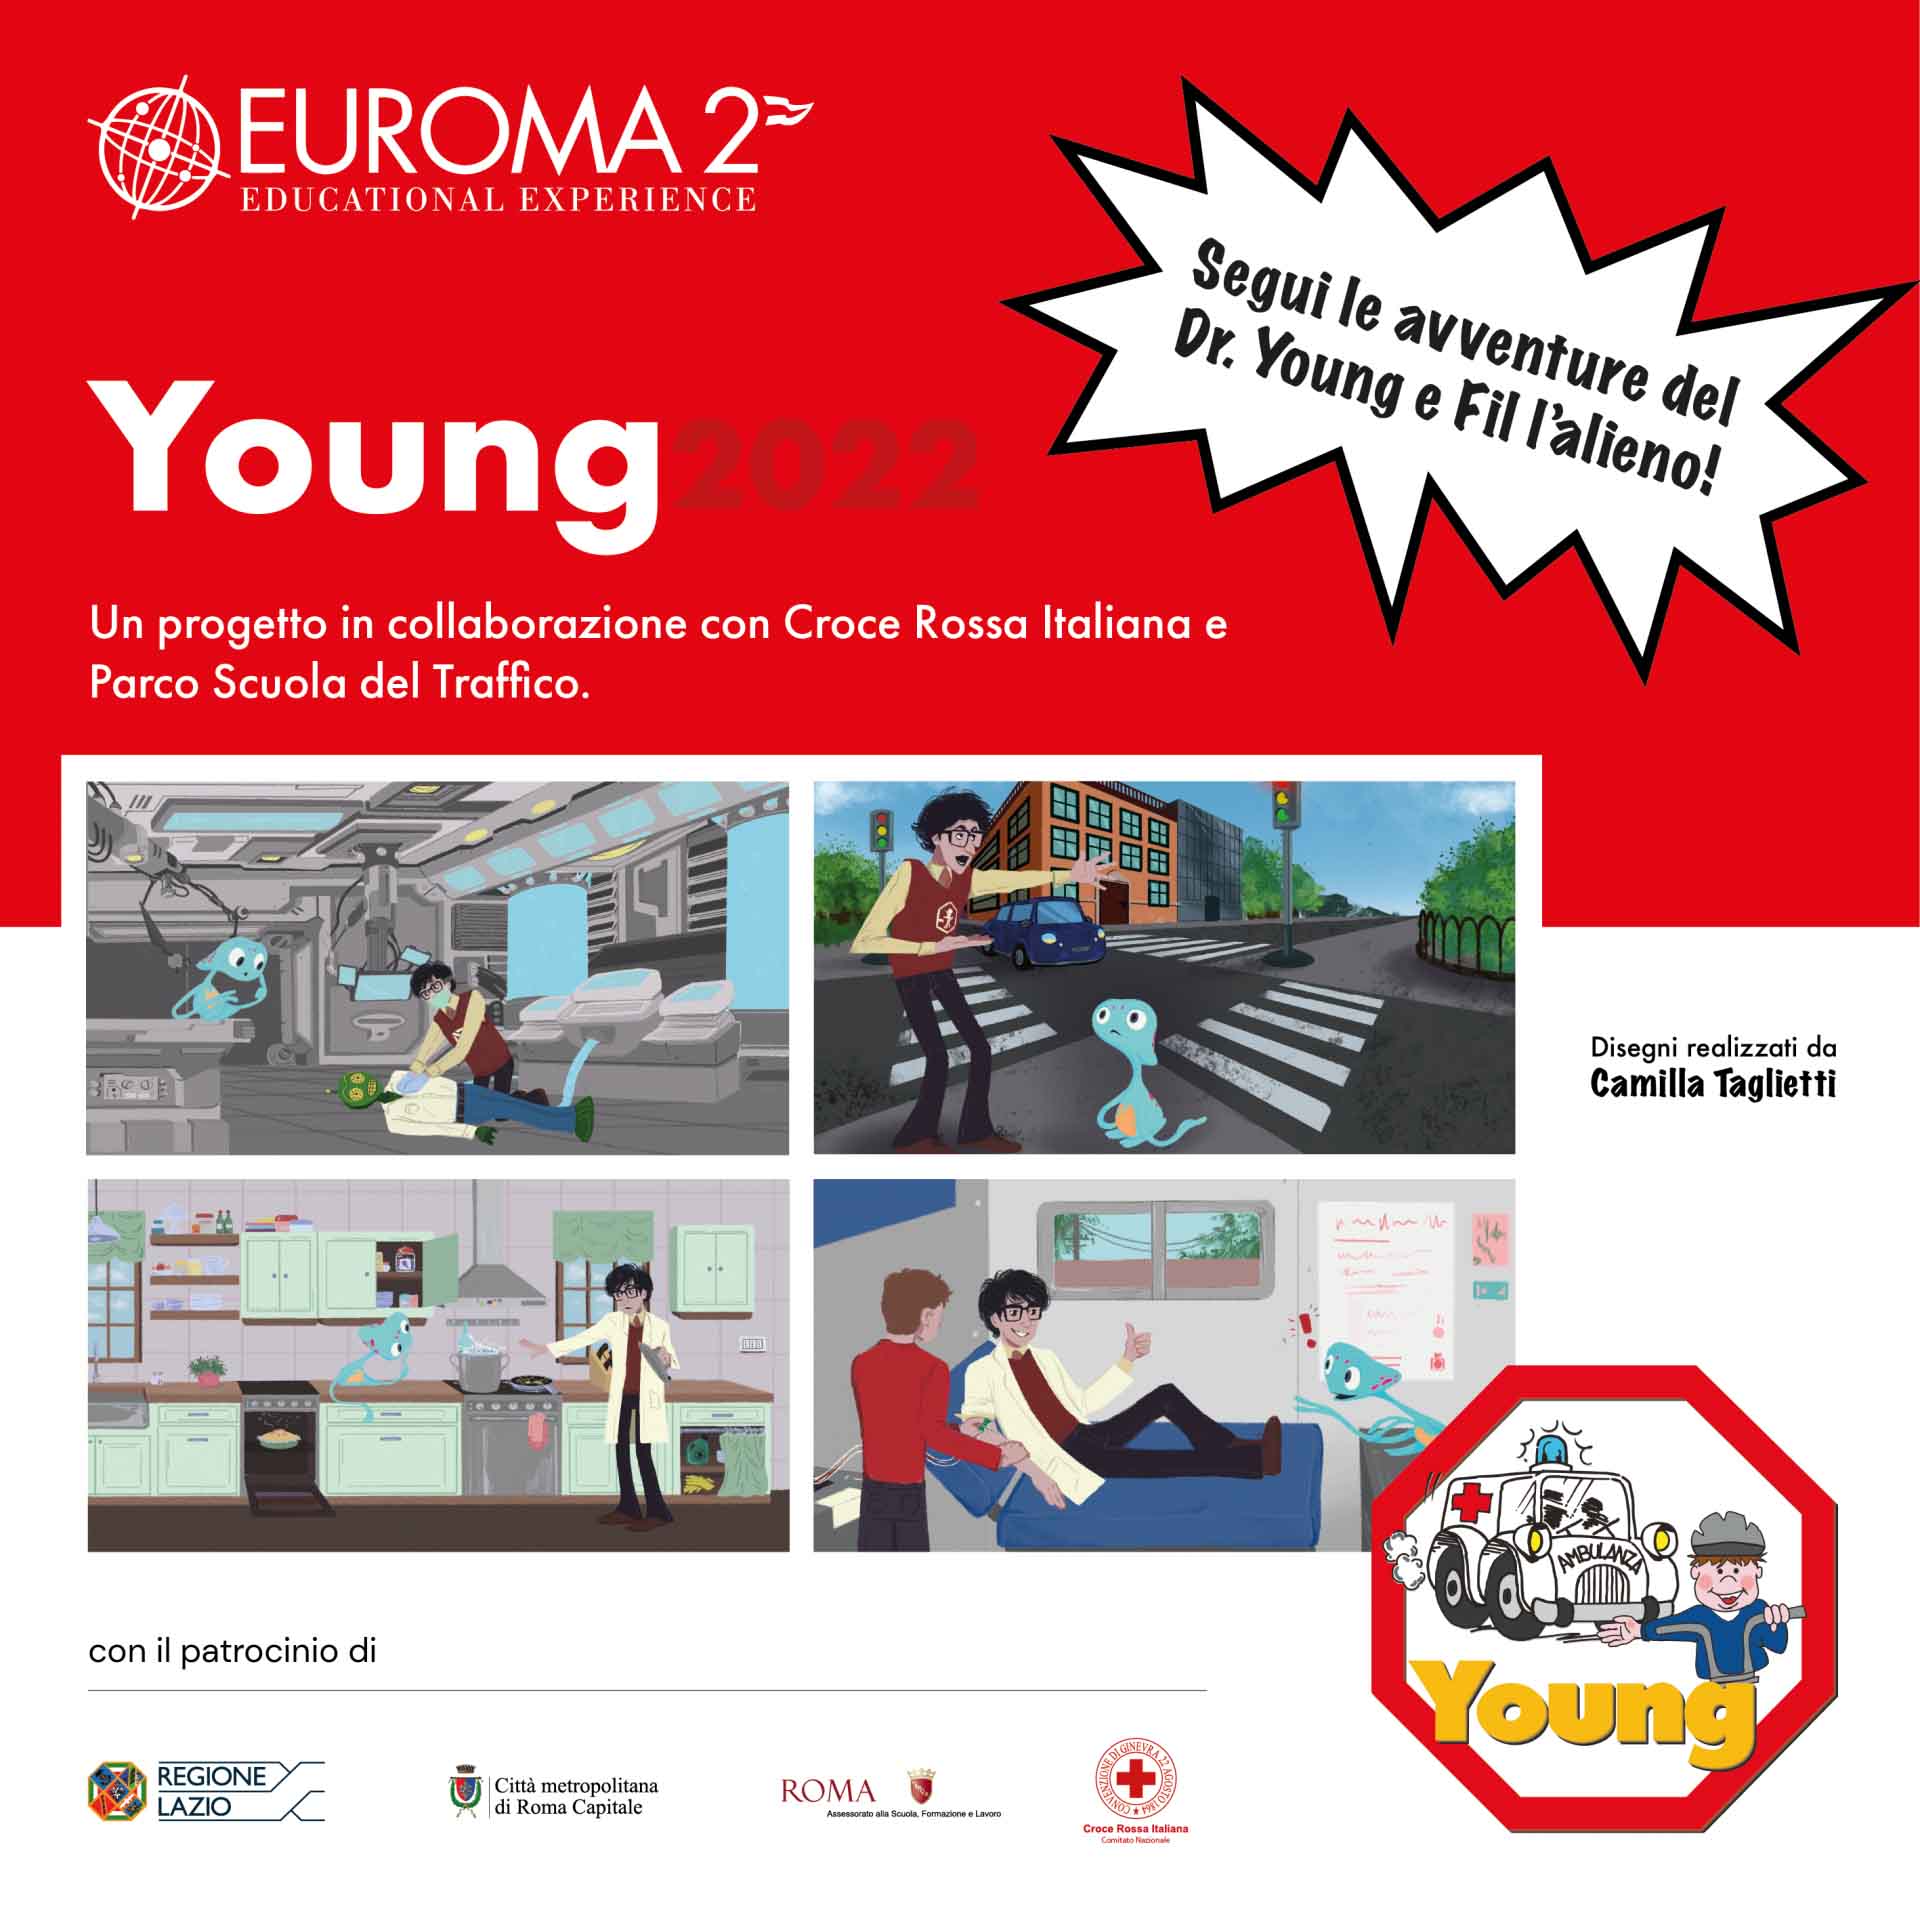 Progetto Young al Centro Commerciale Euroma2